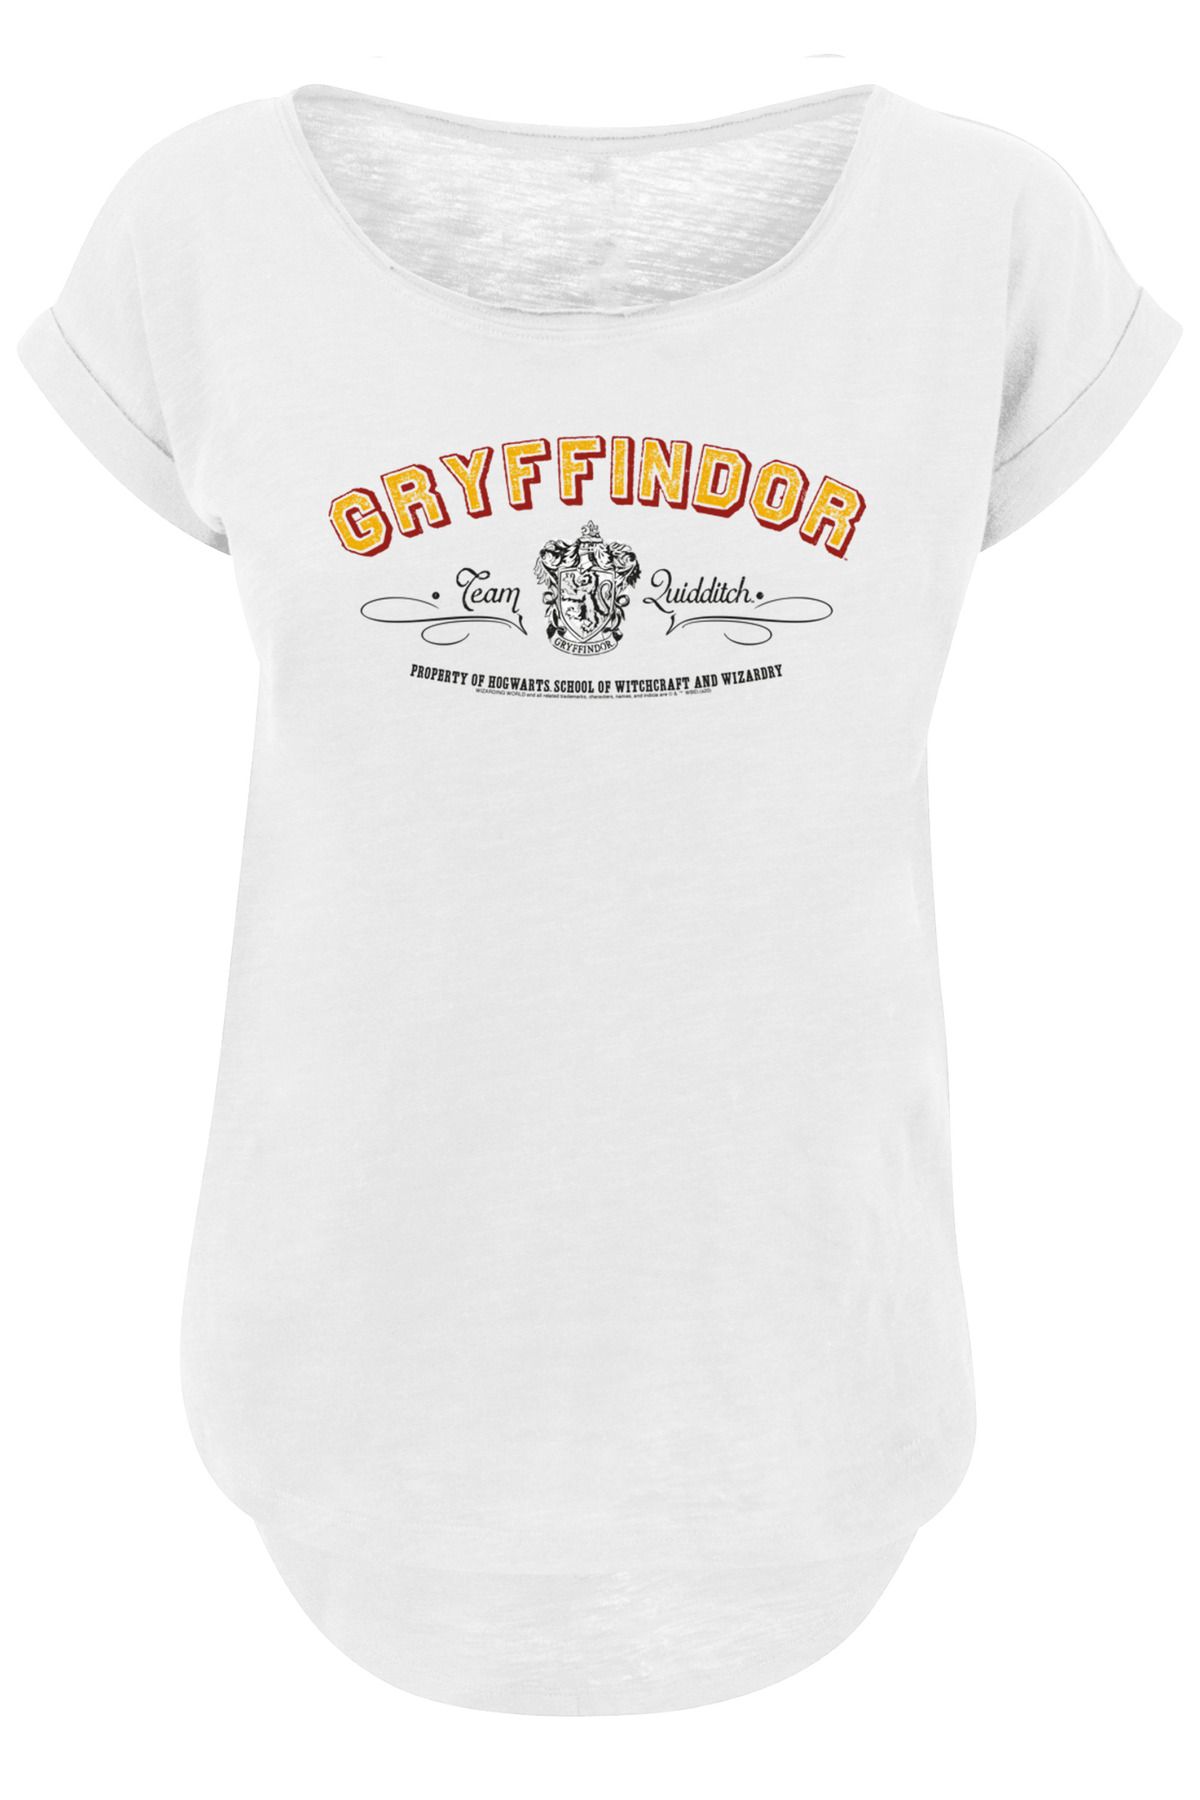 F4NT4STIC Harry Potter Gryffindor Team Trendyol Damen Slub-T mit Quidditch - -Shirt für für langem Damen